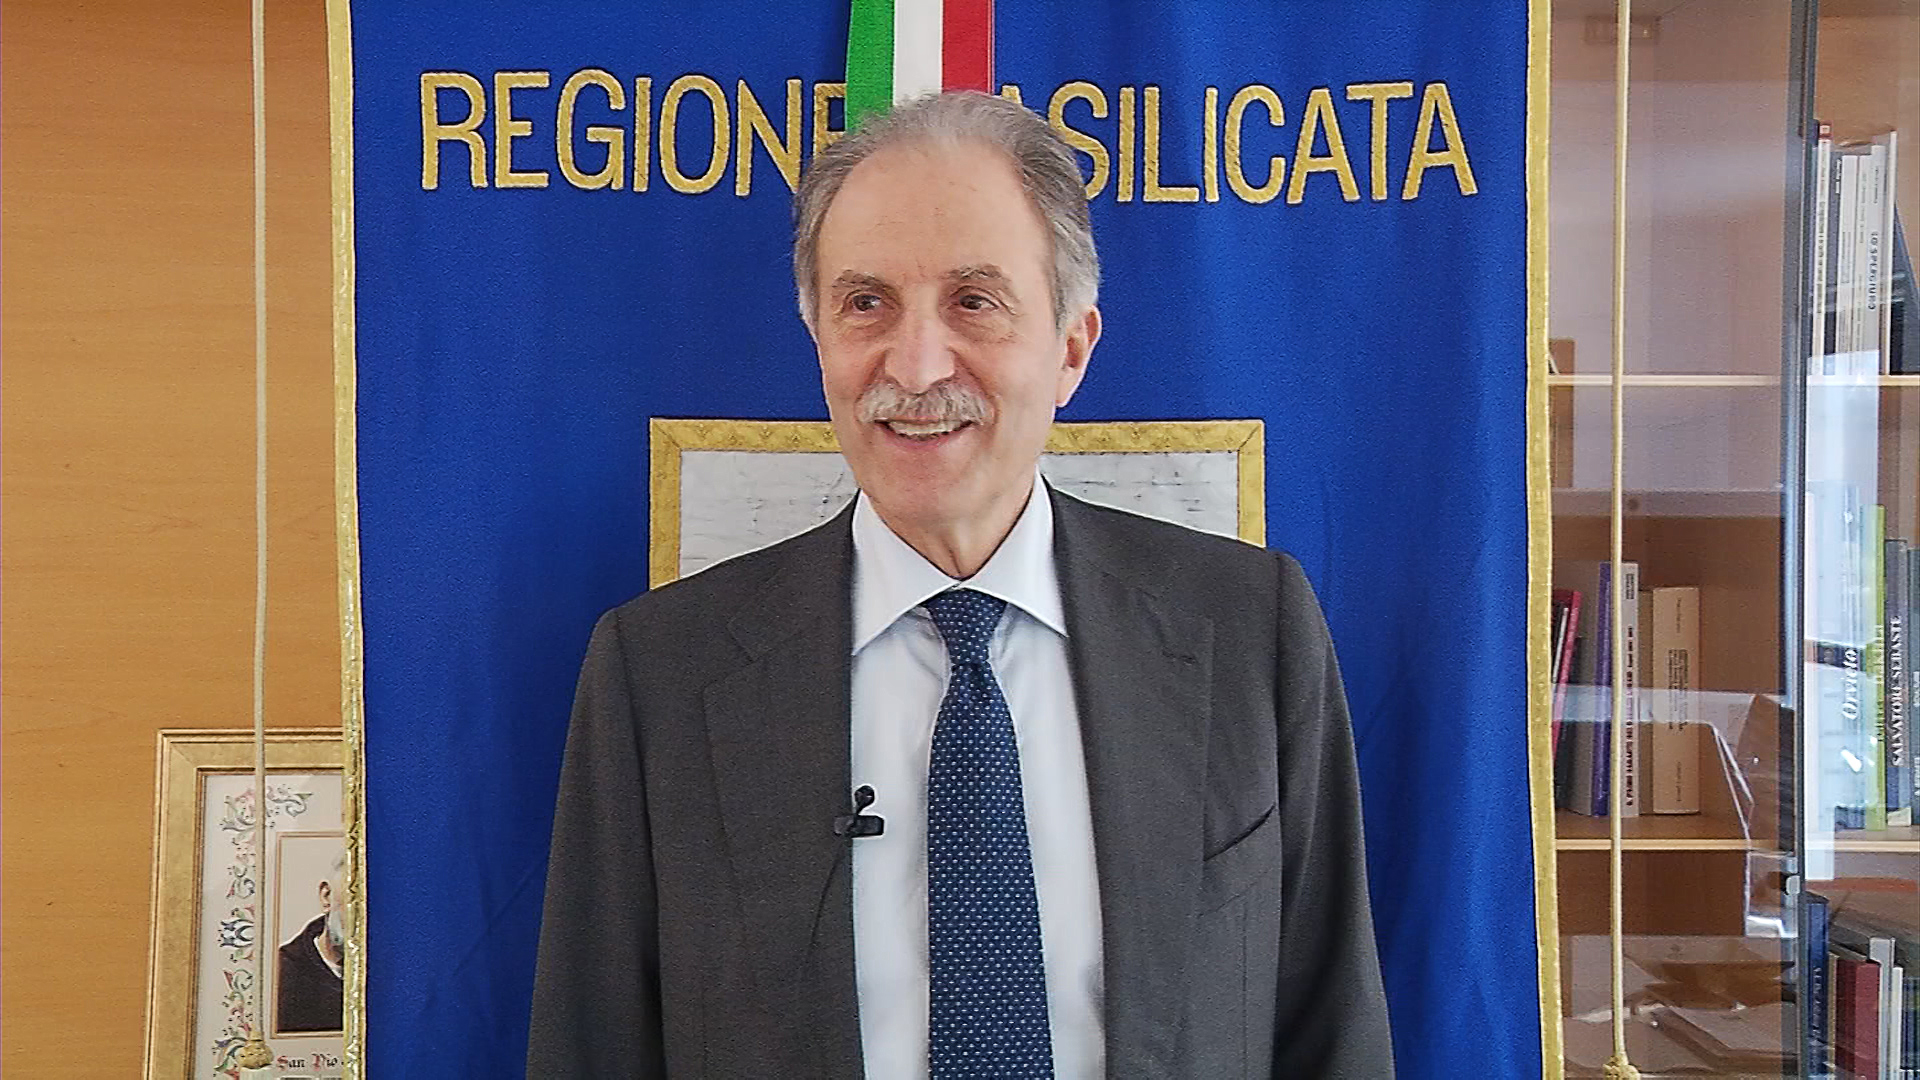 Festival delle Regioni, il presidente Bardi: “Un focus sul nuovo regionalismo”